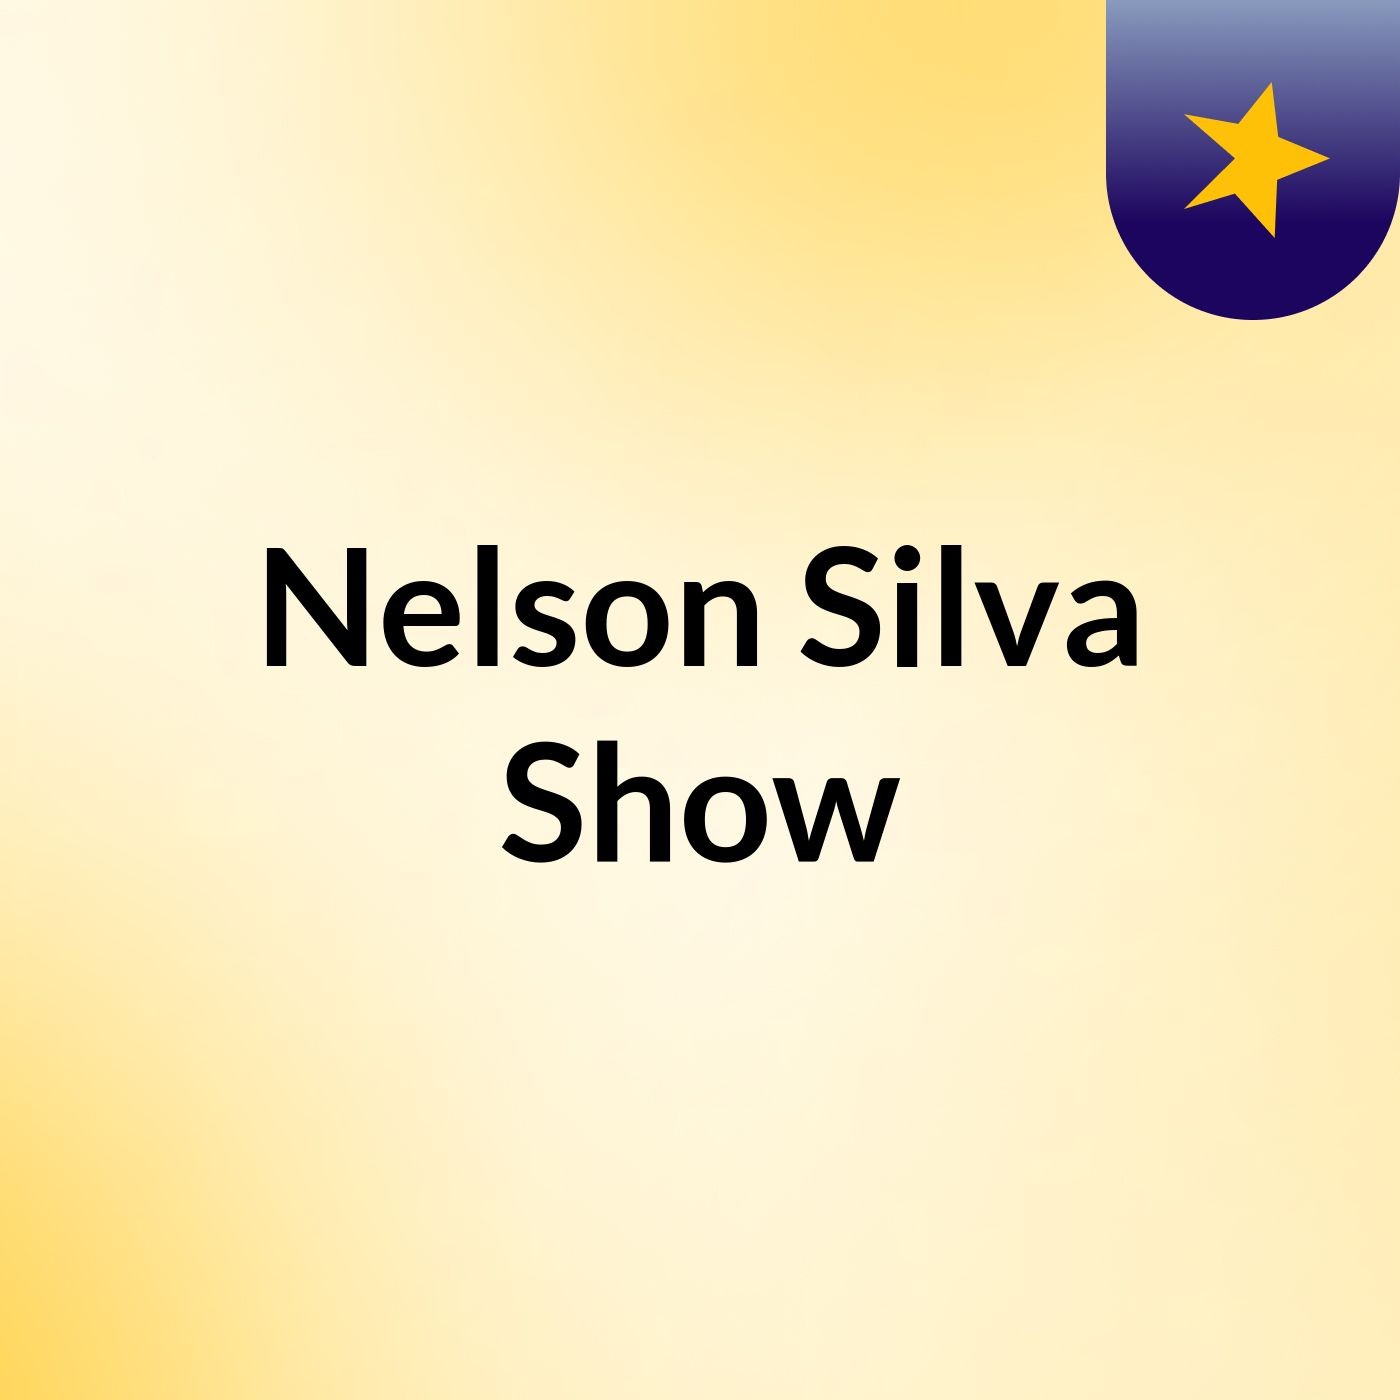 Nelson Silva Show